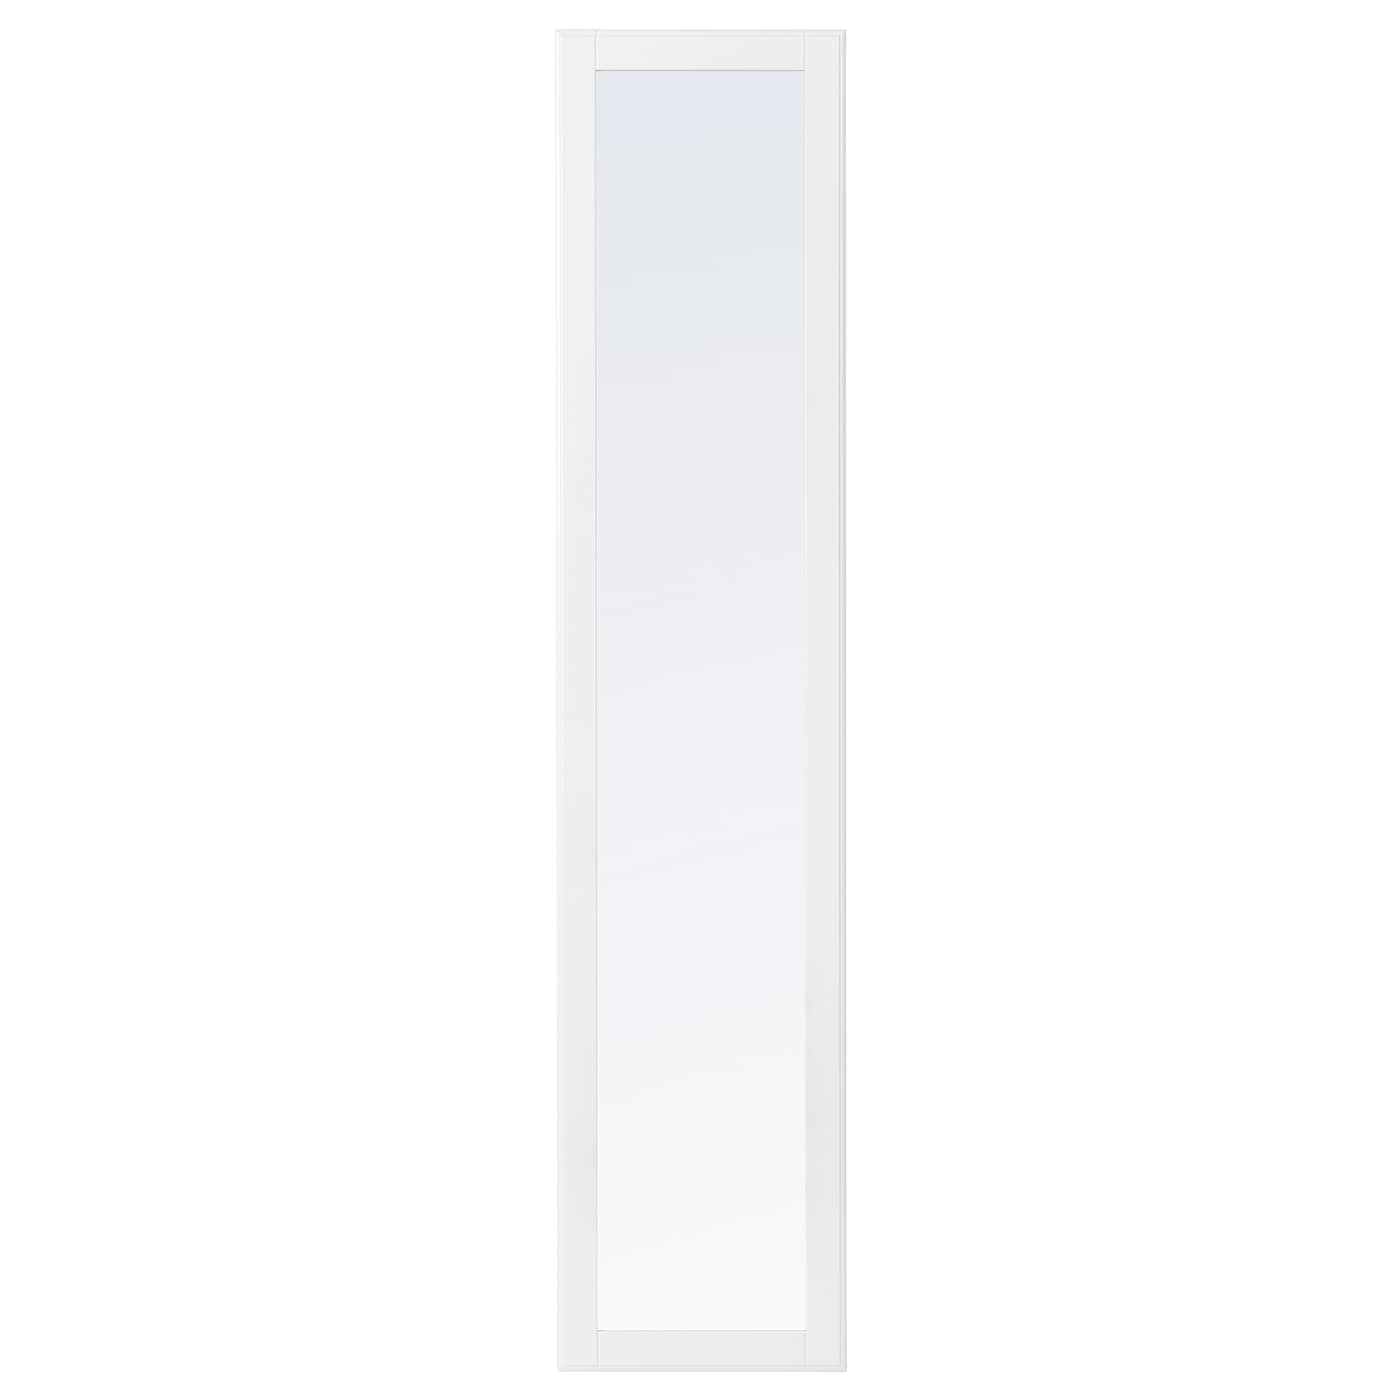 Дверь с петлями - TYSSEDAL  IKEA/  ТИССЕДАЛЬ ИКЕА, 229х50 см,  прозрачный